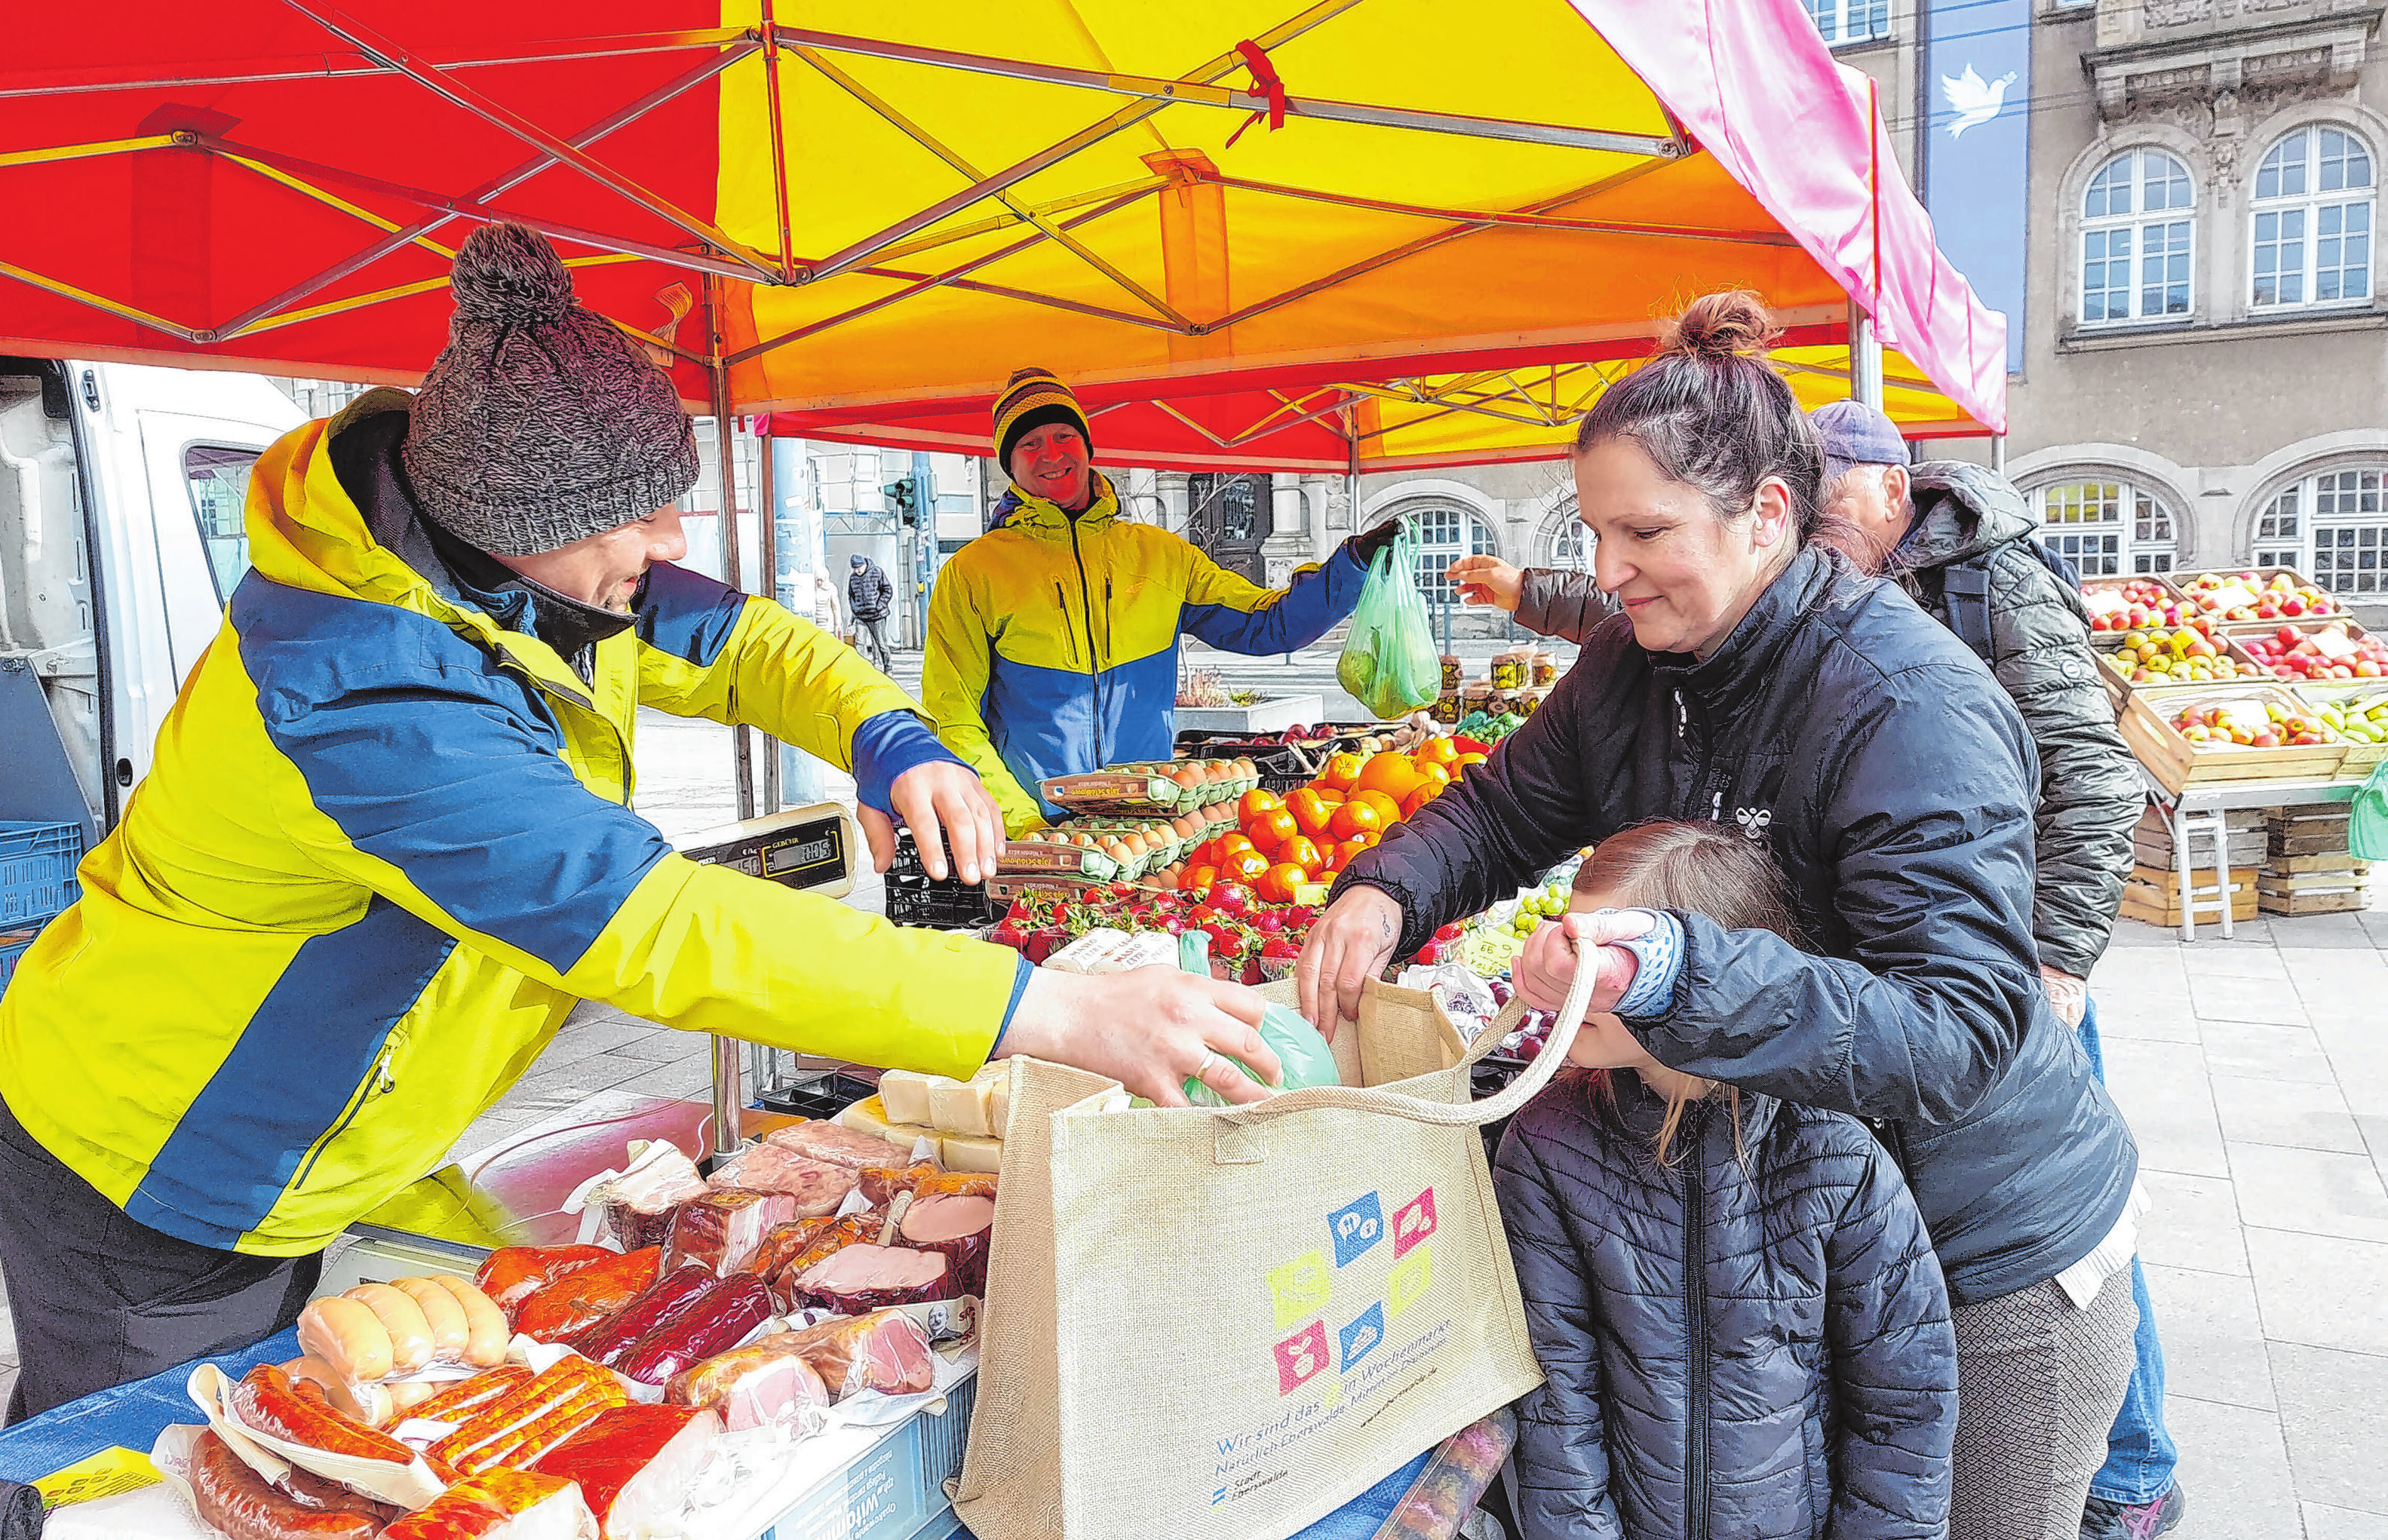 Nachhaltig einkaufen mit einer Jutetasche, die das Stadtmarketing für den Marktbesucher kreiert hat - hier Anja Brose (r.) am Obst- und Gemüsestand. Fotos (2): saschu